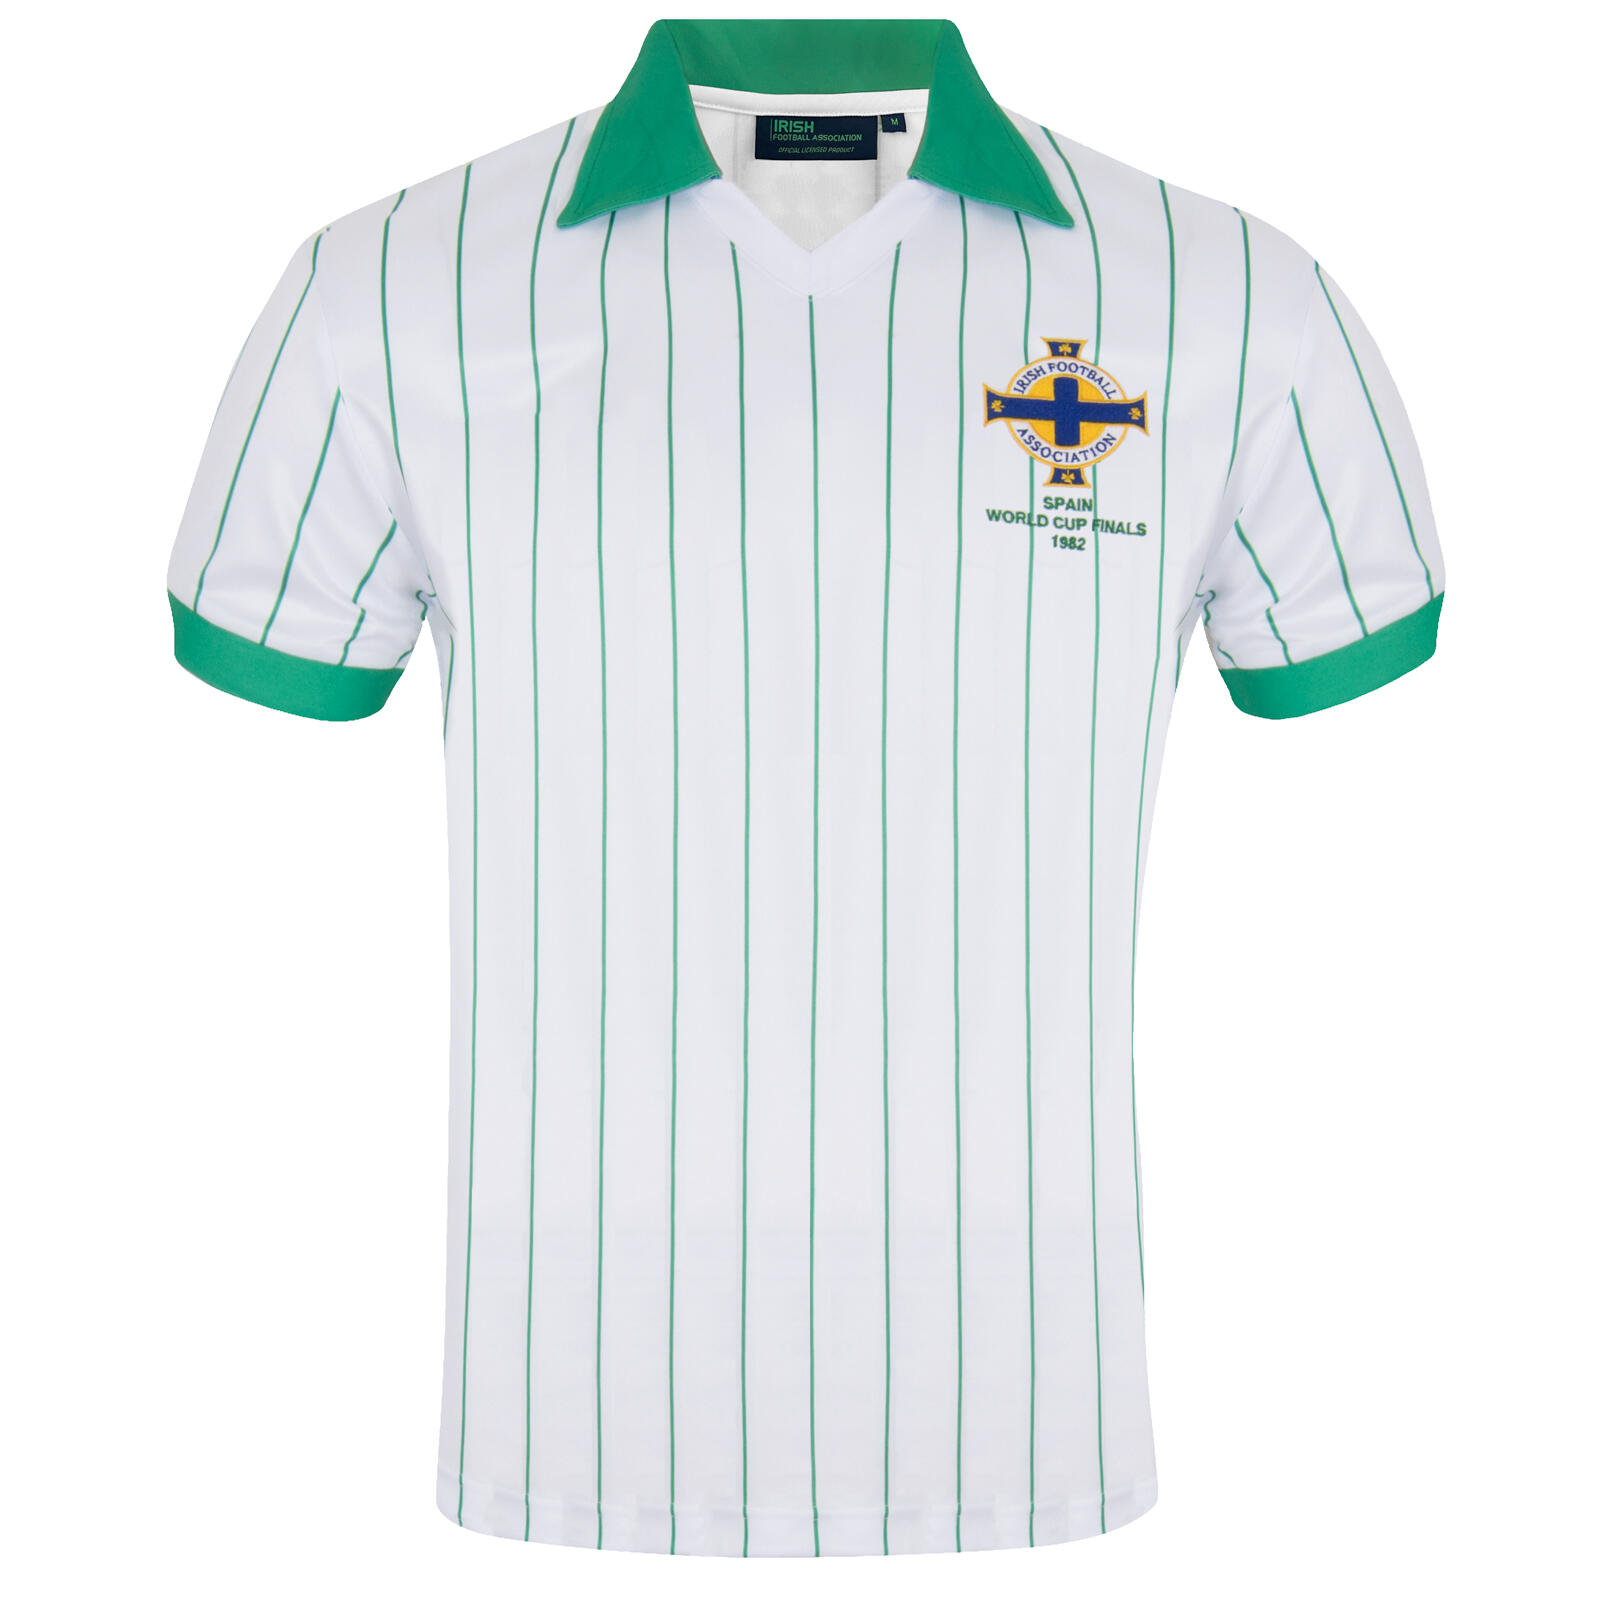 IRISH FOOTBALL ASSOCIATION Northern Ireland Mens Shirt Kit 1982 World Cup Finals Official Football Gift